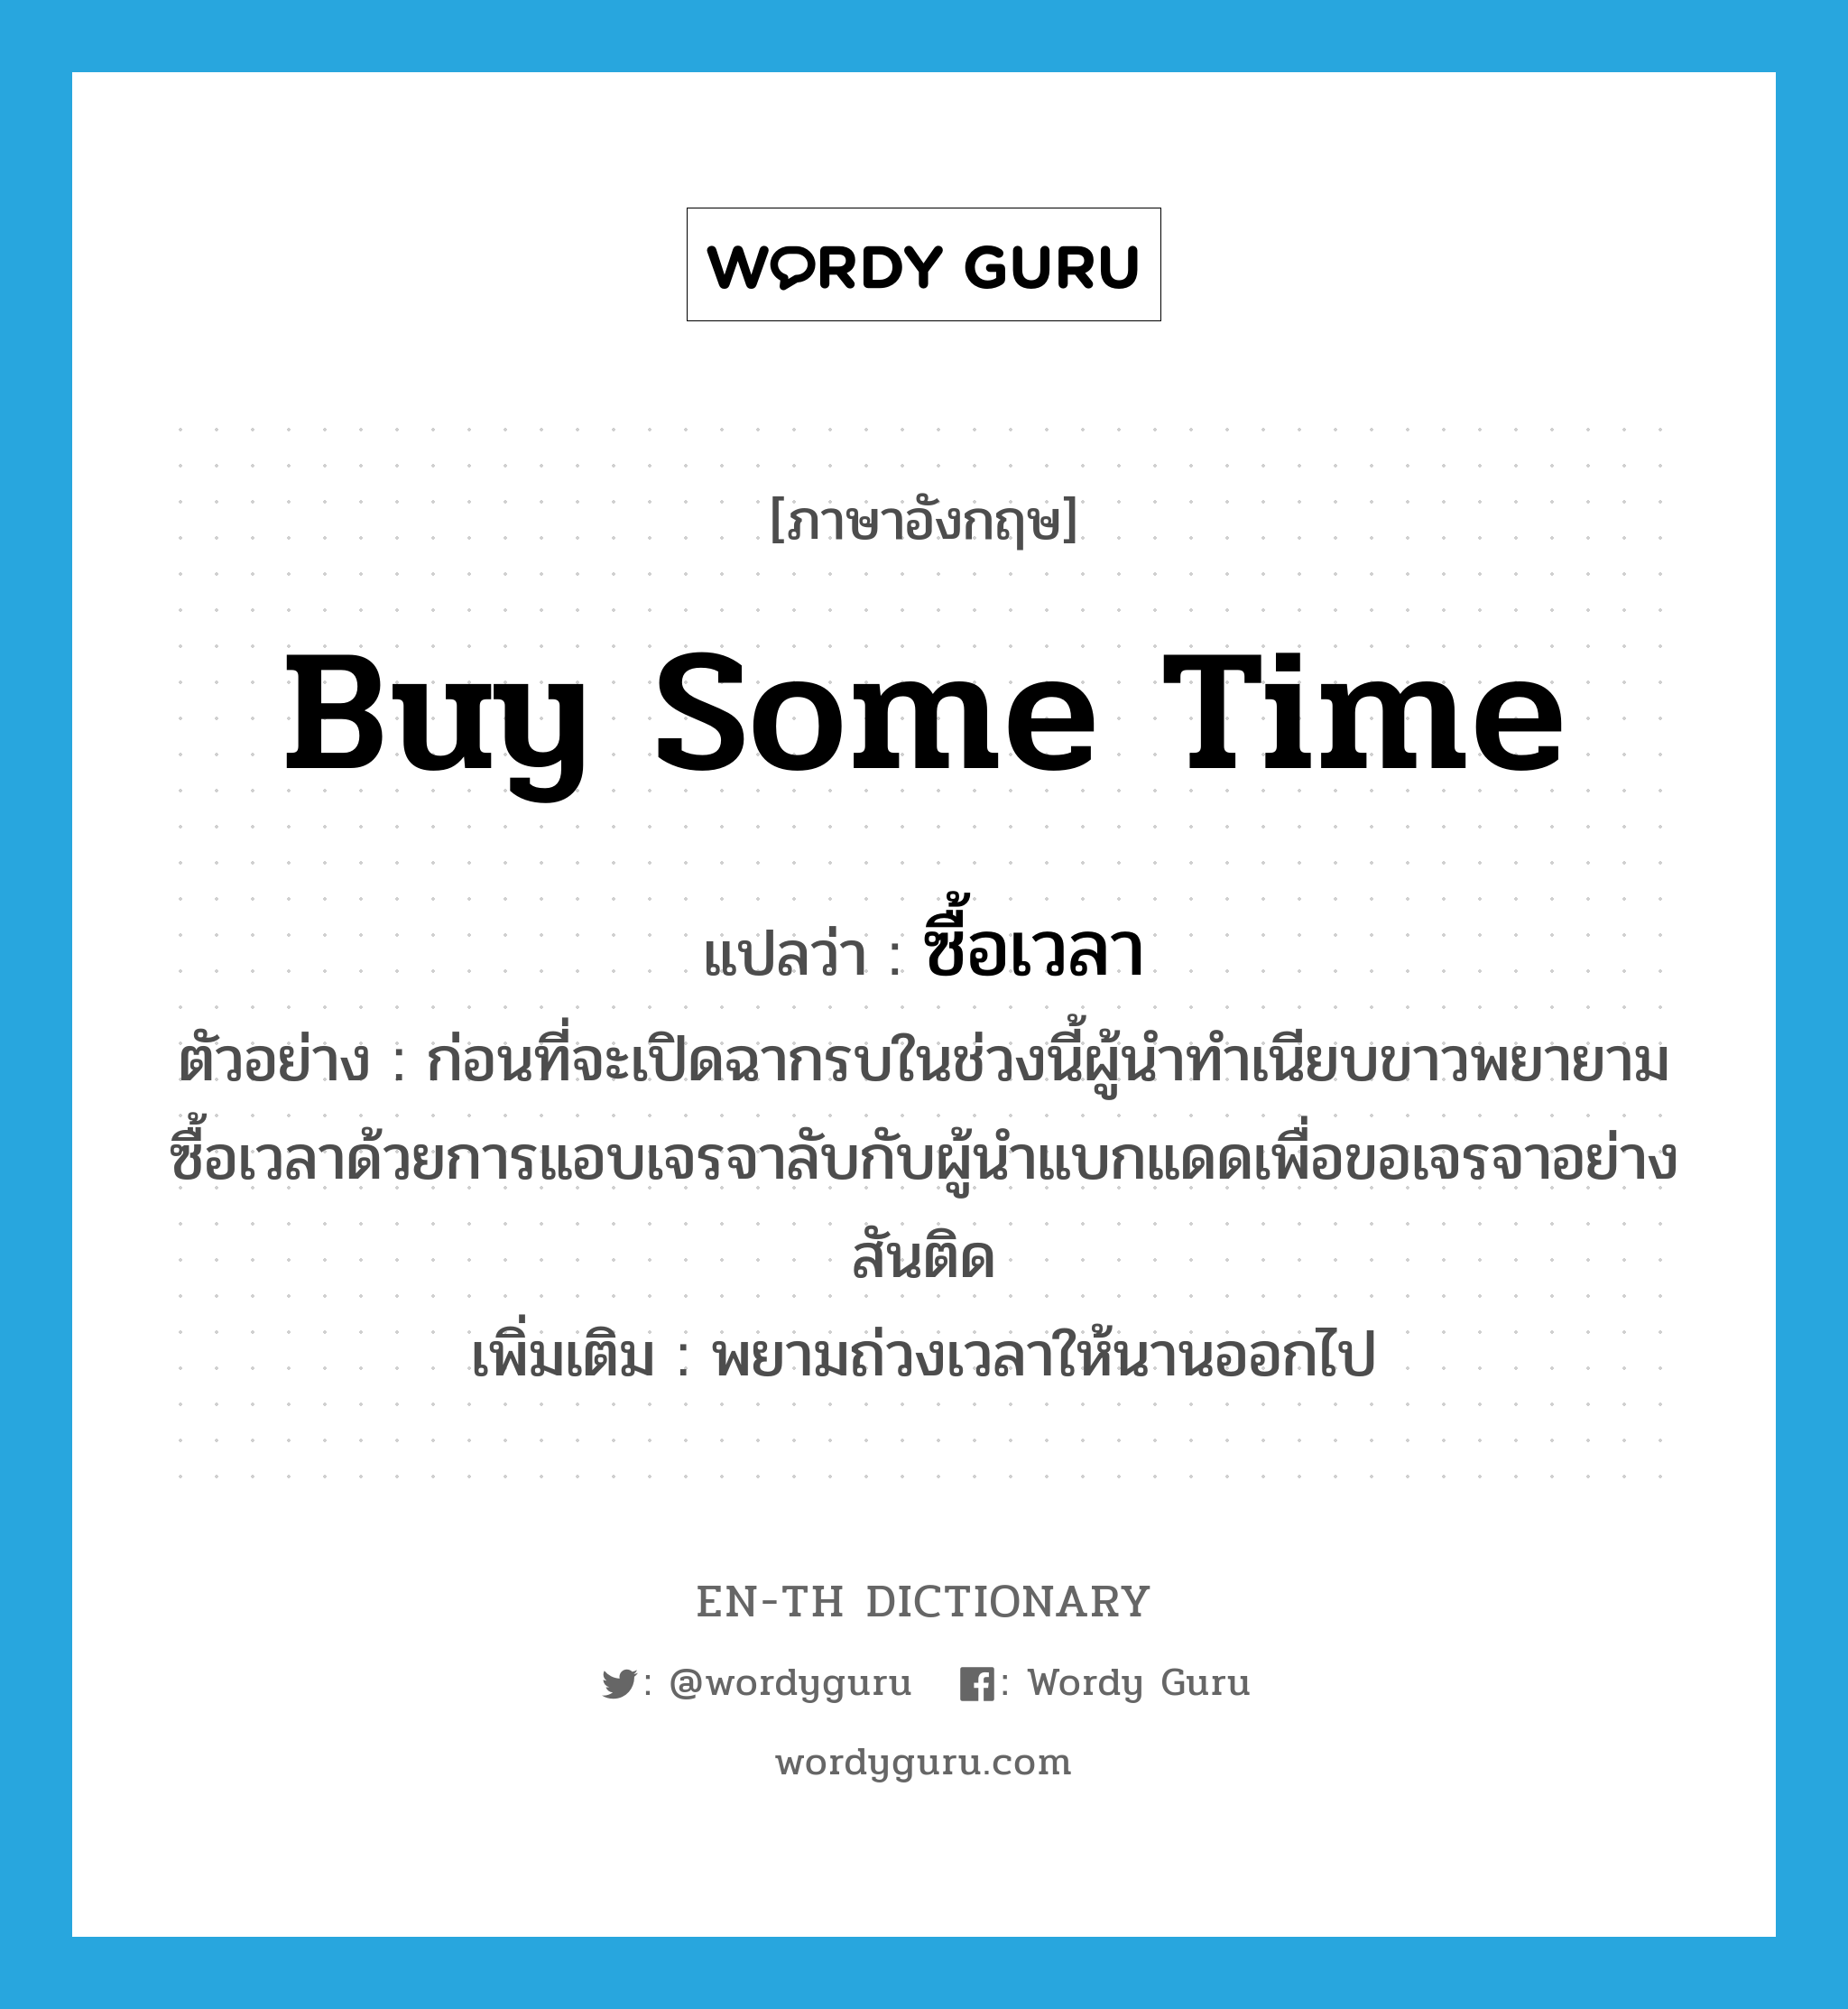 buy some time แปลว่า?, คำศัพท์ภาษาอังกฤษ buy some time แปลว่า ซื้อเวลา ประเภท V ตัวอย่าง ก่อนที่จะเปิดฉากรบในช่วงนี้ผู้นำทำเนียบขาวพยายามซื้อเวลาด้วยการแอบเจรจาลับกับผู้นำแบกแดดเพื่อขอเจรจาอย่างสันติด เพิ่มเติม พยามถ่วงเวลาให้นานออกไป หมวด V